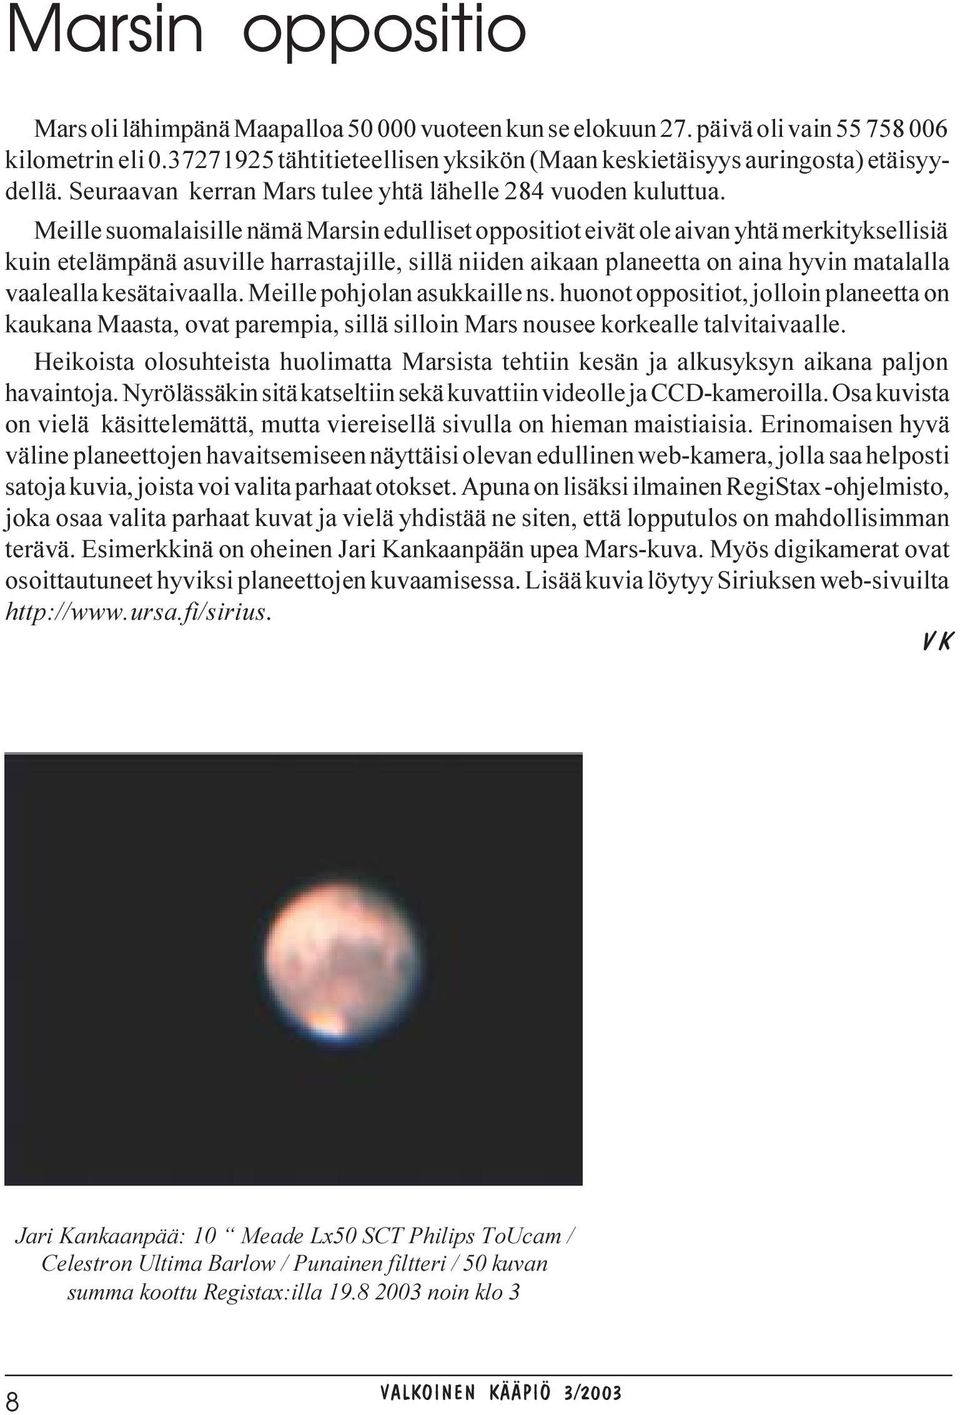 Meille suomalaisille nämä Marsin edulliset oppositiot eivät ole aivan yhtä merkityksellisiä kuin etelämpänä asuville harrastajille, sillä niiden aikaan planeetta on aina hyvin matalalla vaalealla